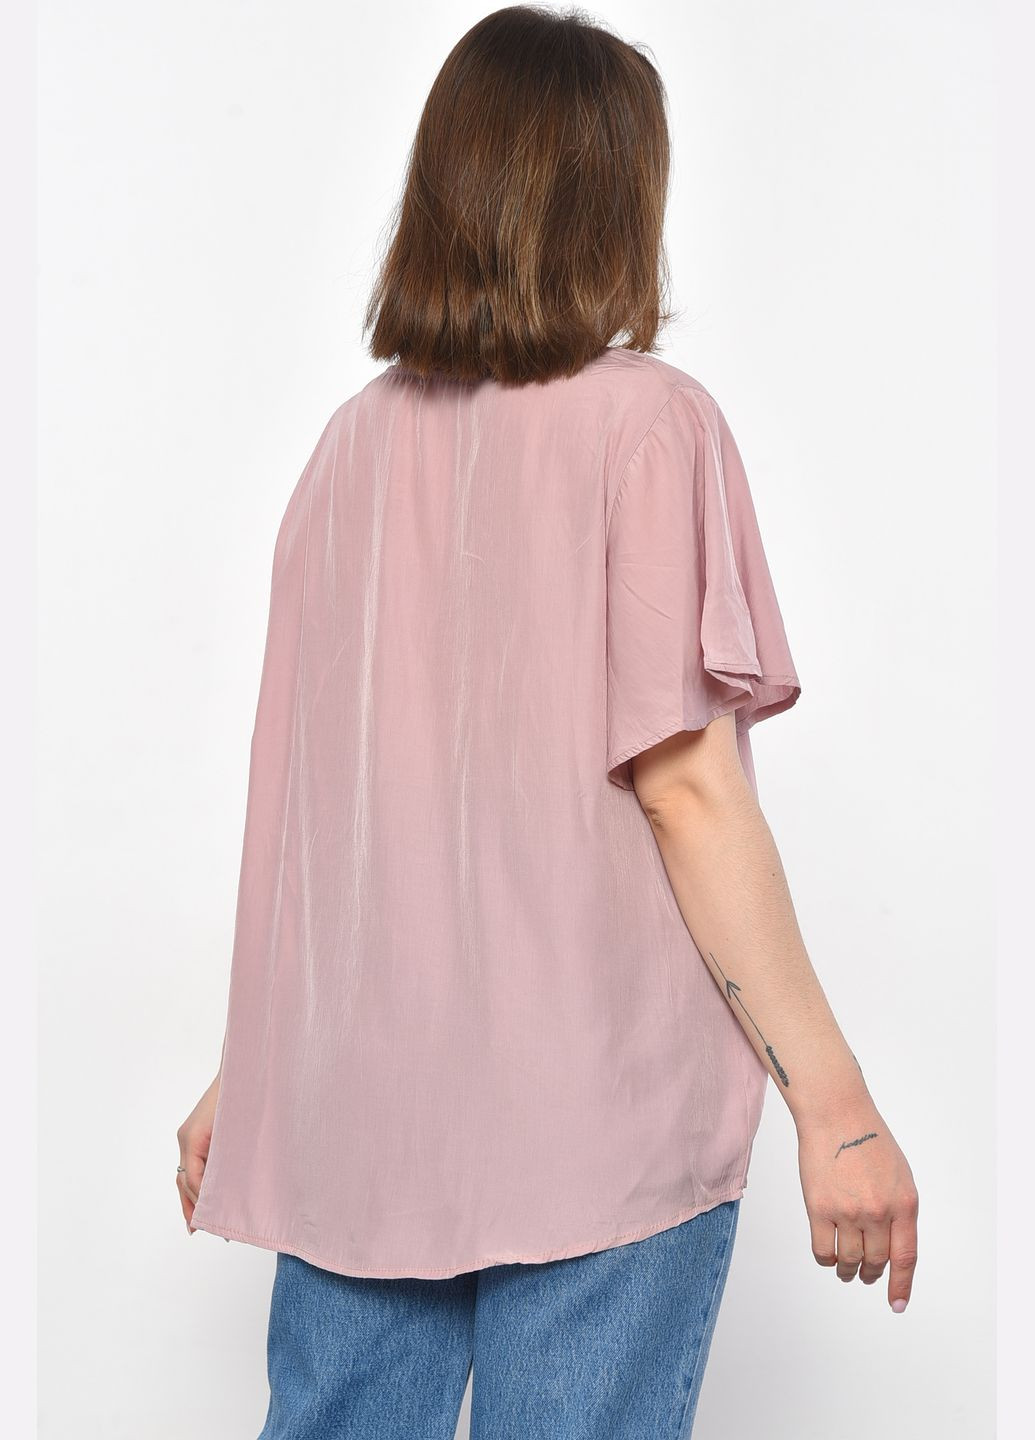 Бежевая блуза женская полубатальная с коротким рукавом пудрового цвета с баской Let's Shop